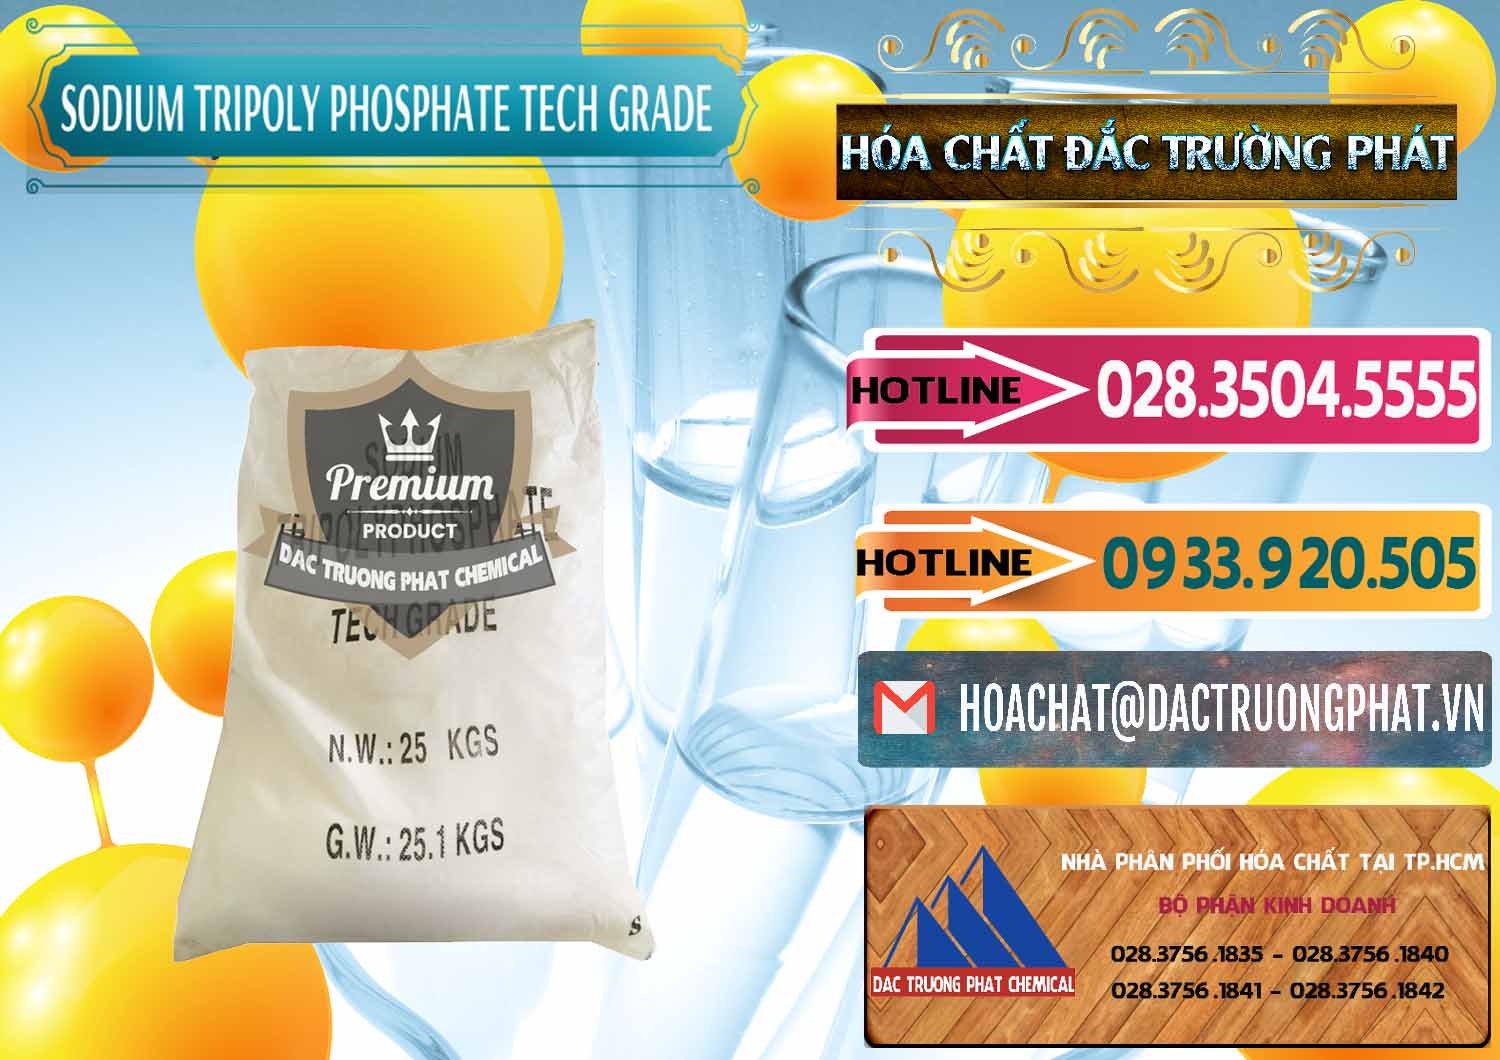 Công ty chuyên cung cấp - bán Sodium Tripoly Phosphate - STPP Tech Grade Trung Quốc China - 0453 - Cty chuyên cung cấp _ bán hóa chất tại TP.HCM - dactruongphat.vn